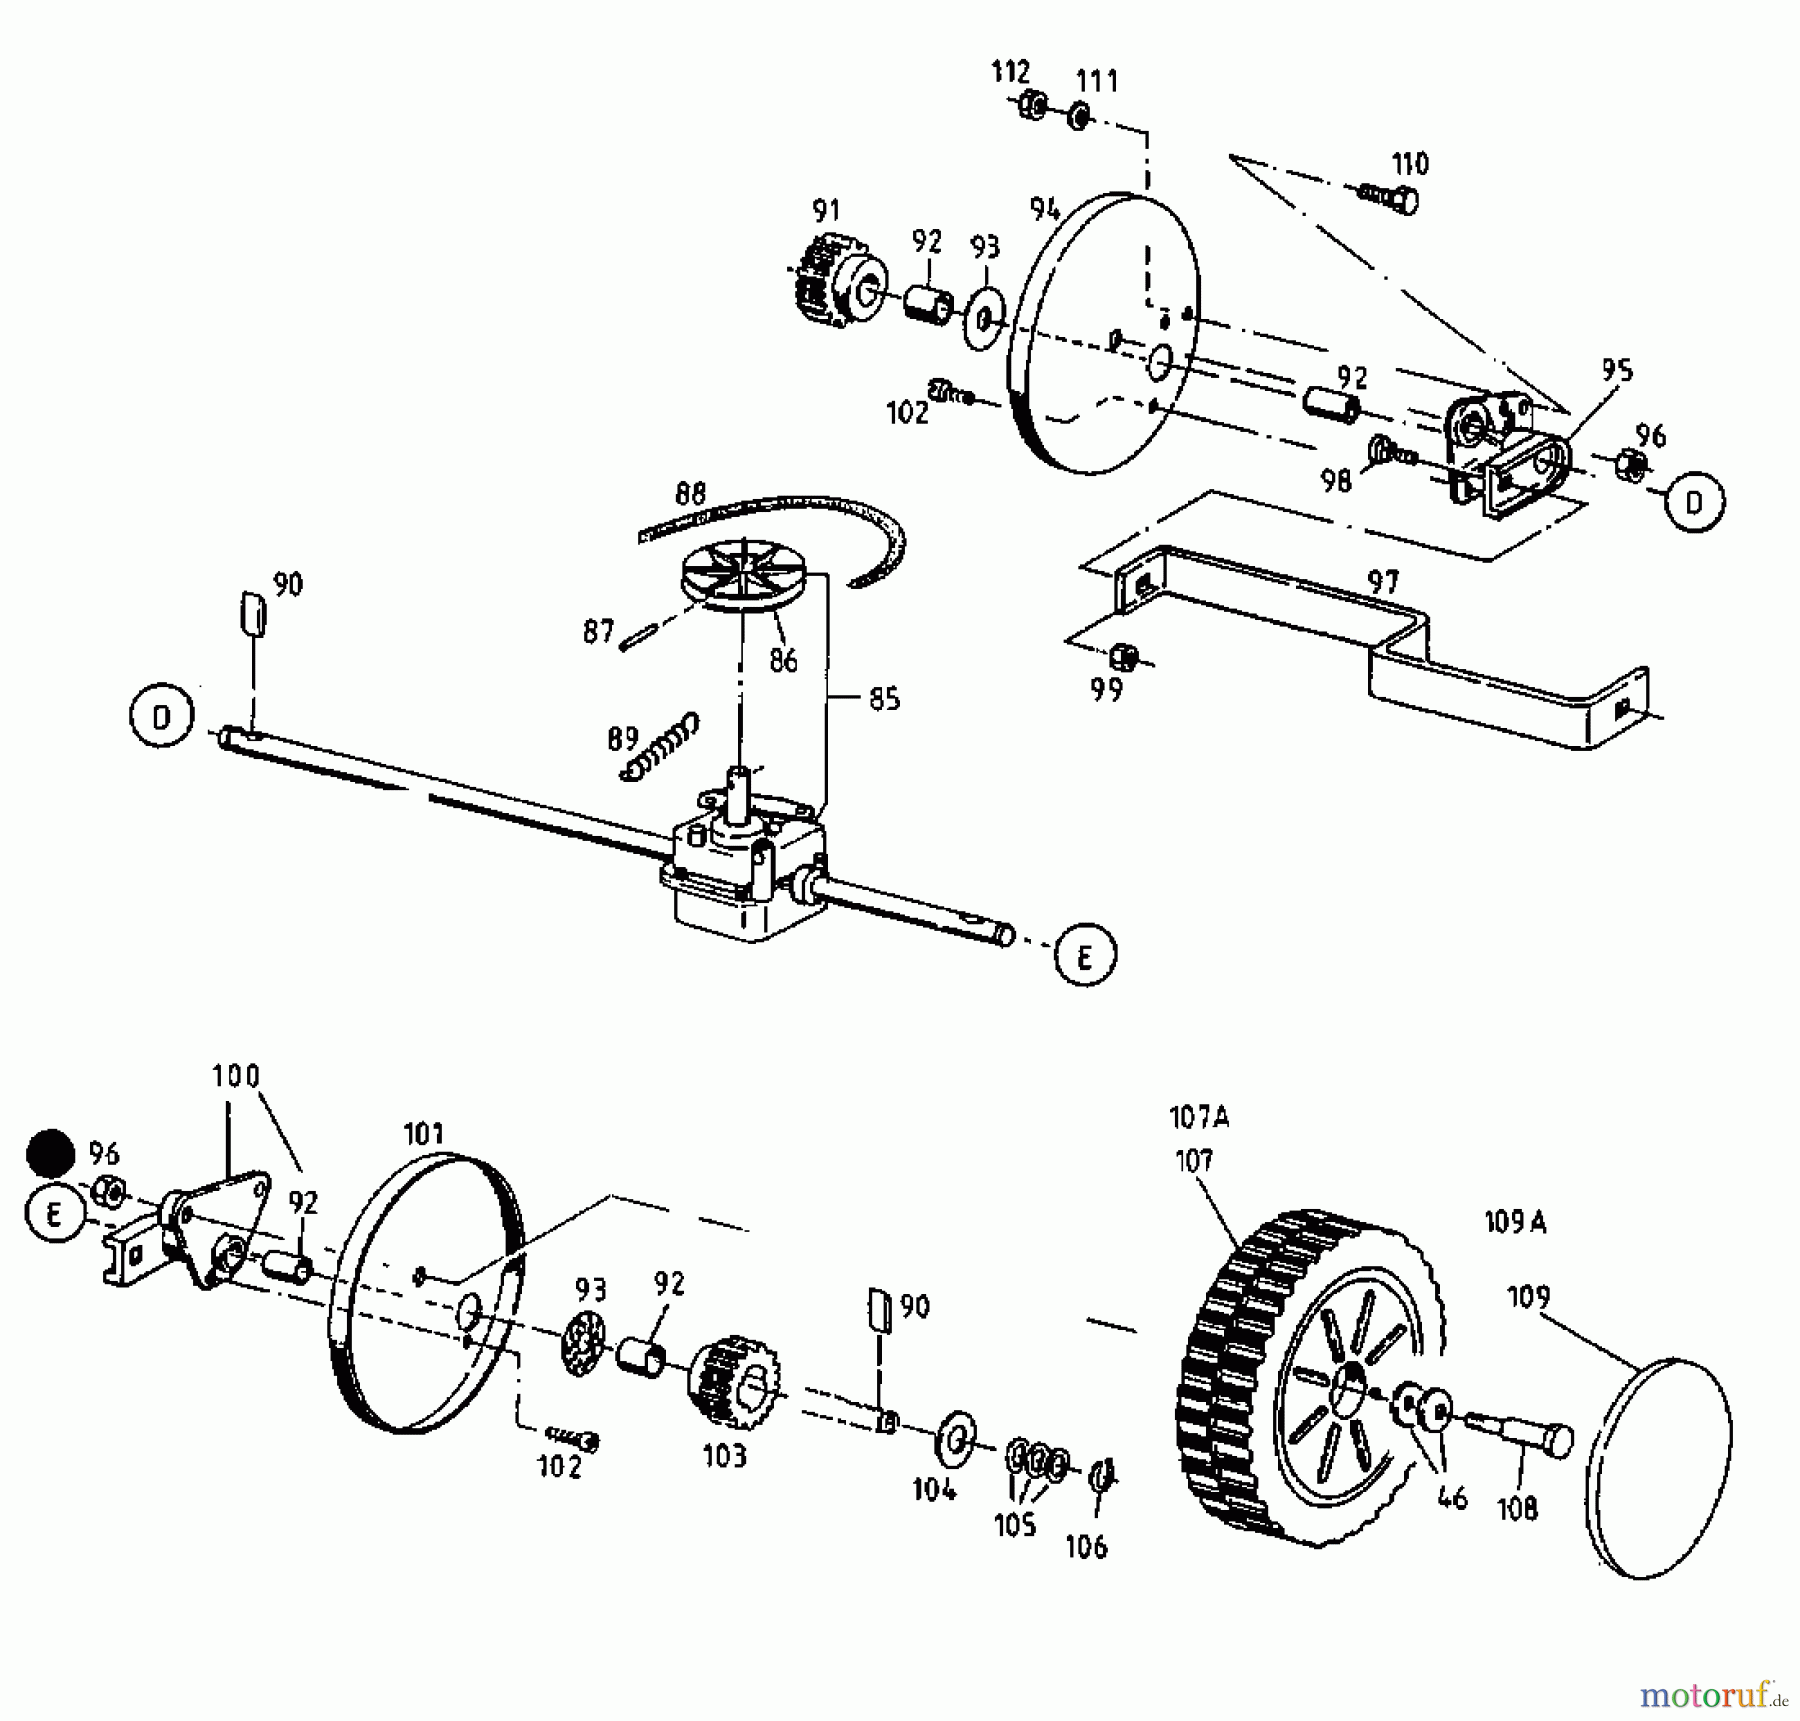  Gutbrod Petrol mower self propelled HB 48 RLS 12C-T58X690  (2000) Gearbox